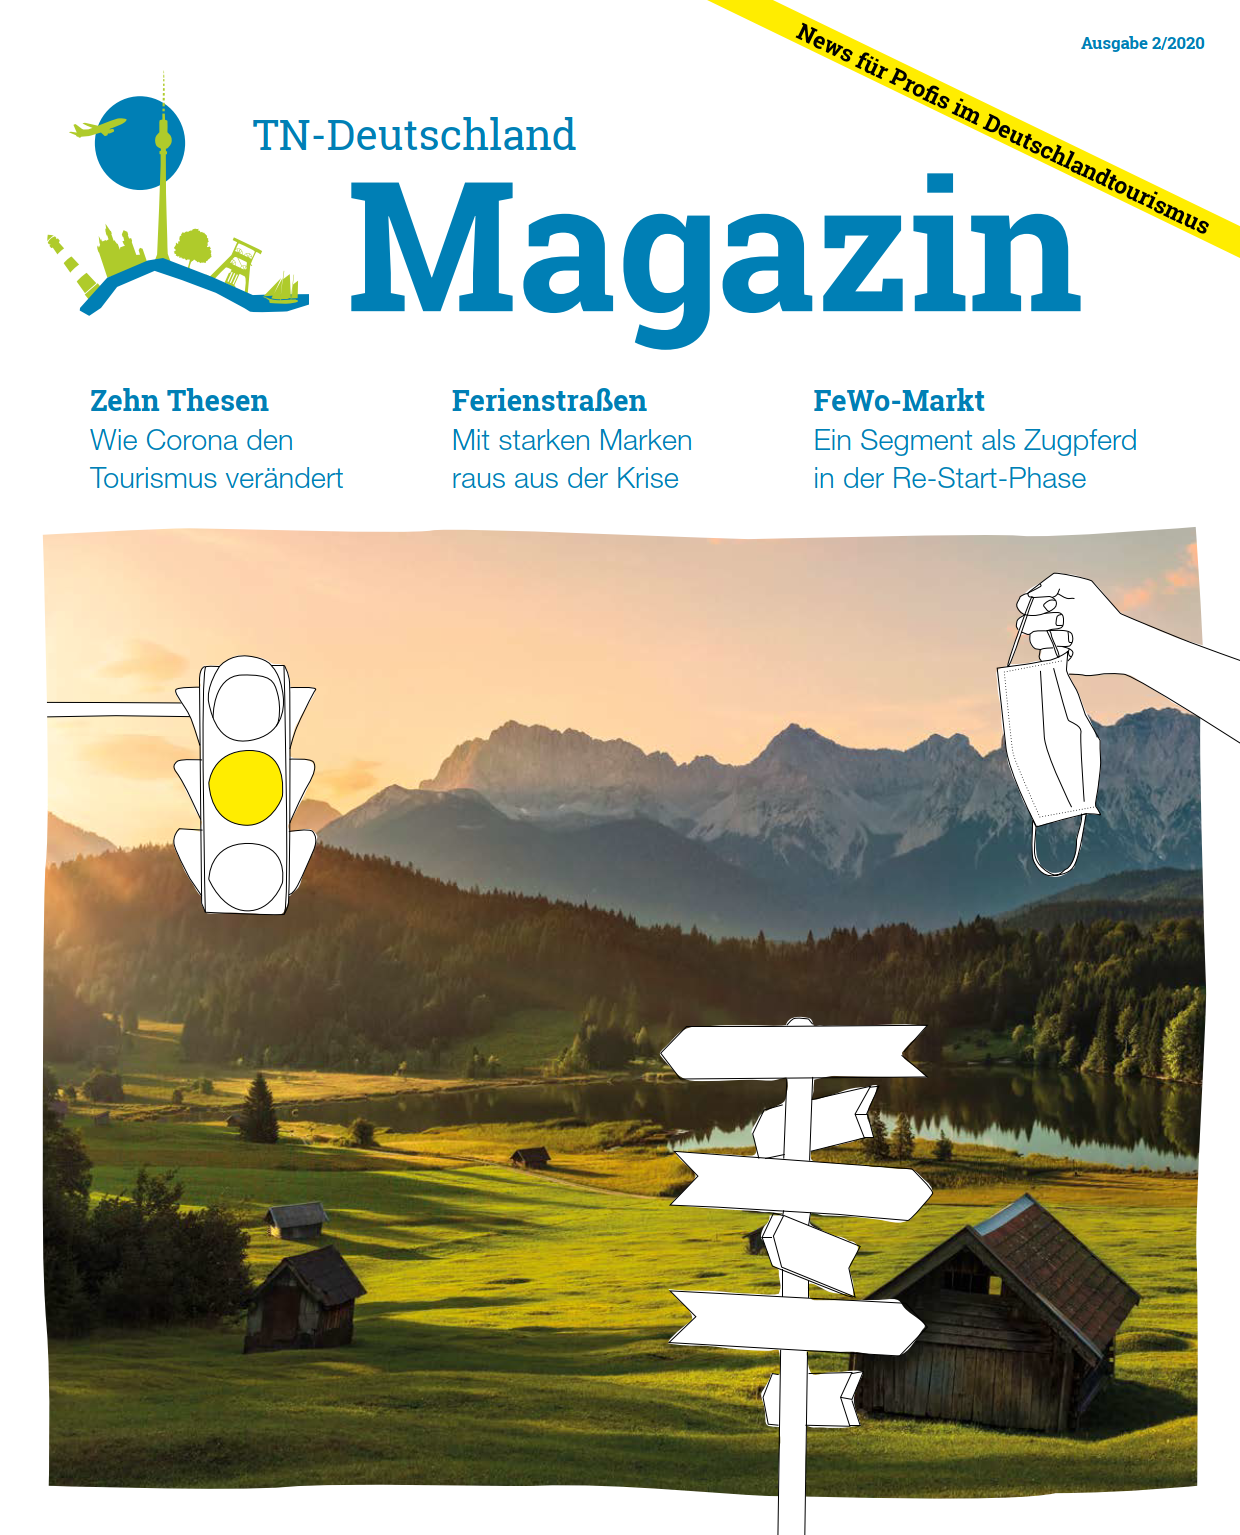 TN Deutschland Magazin 2020 Cover